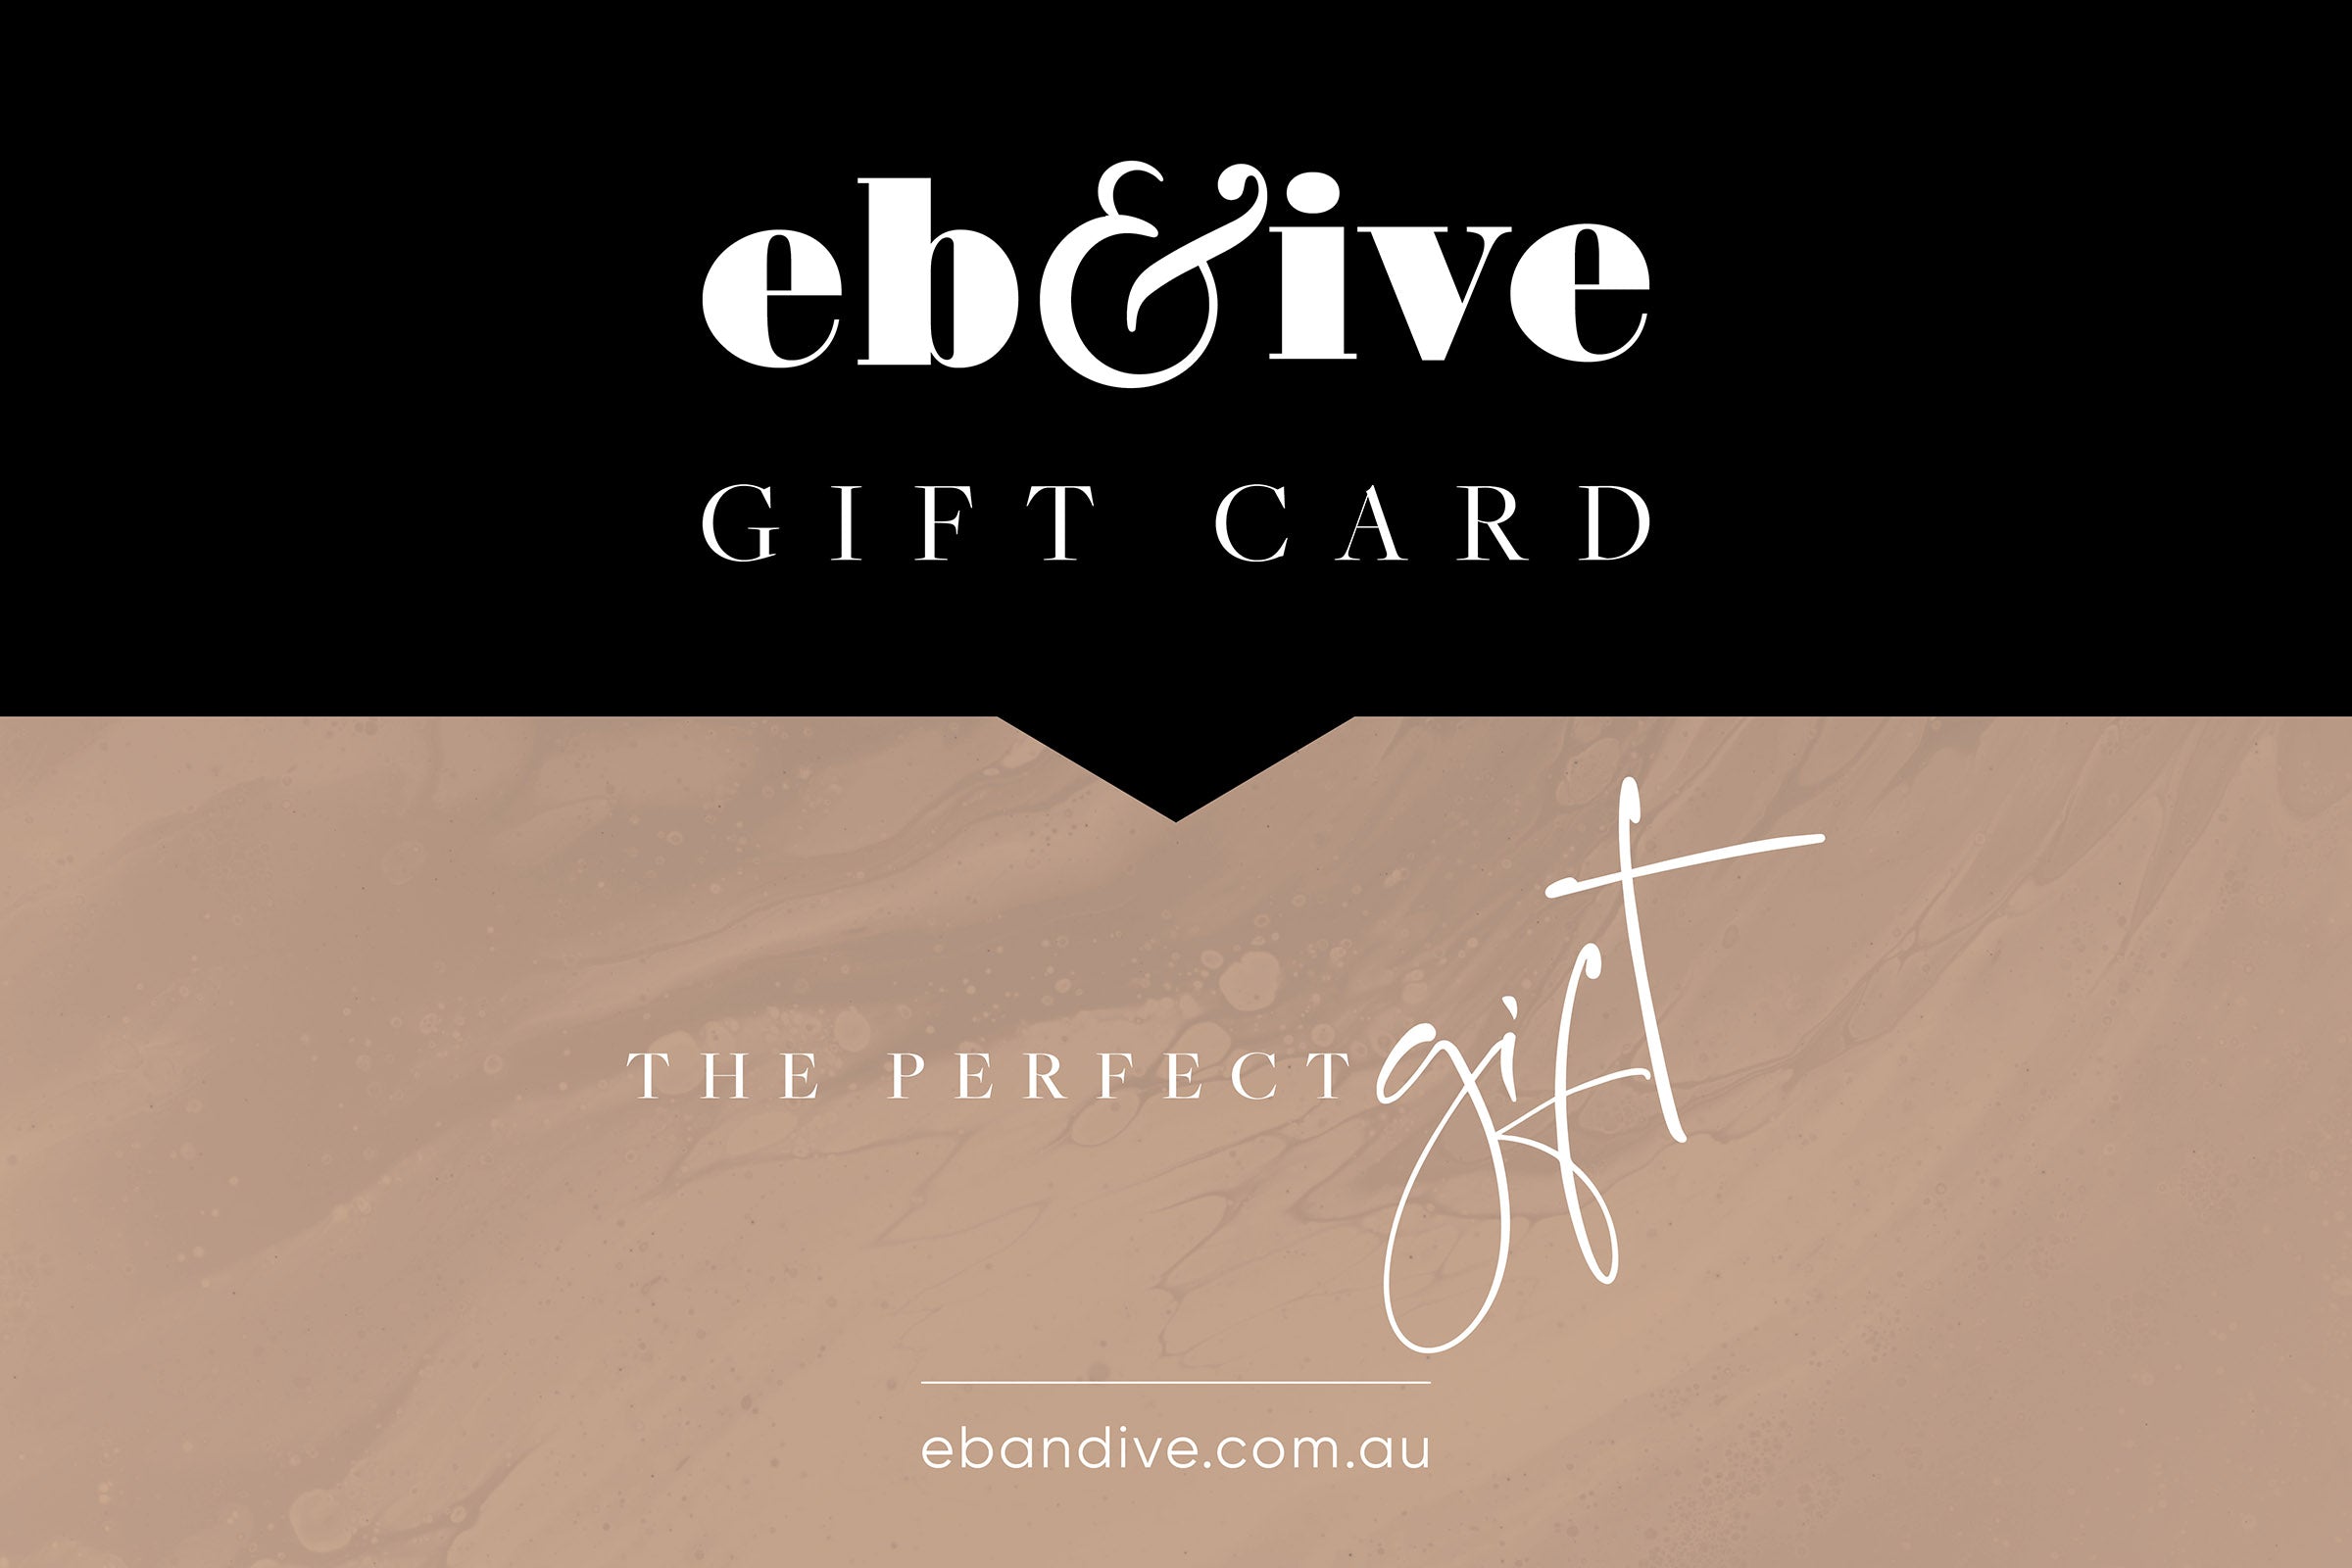 eGift Card - eb&ive Gift Card